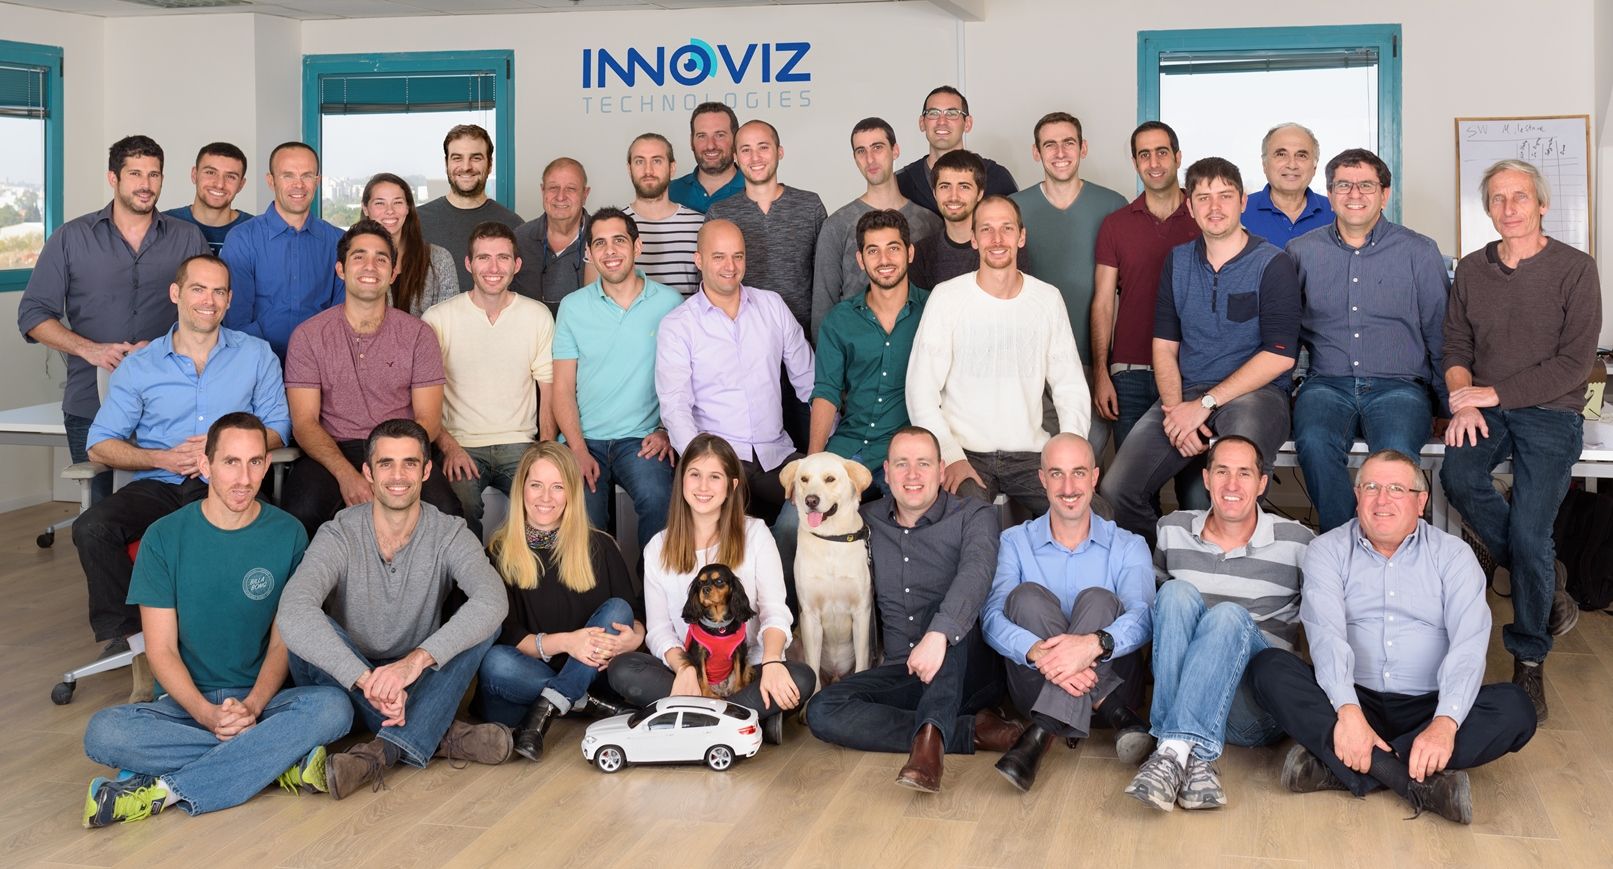 The Innoviz team. Photo: courtesy